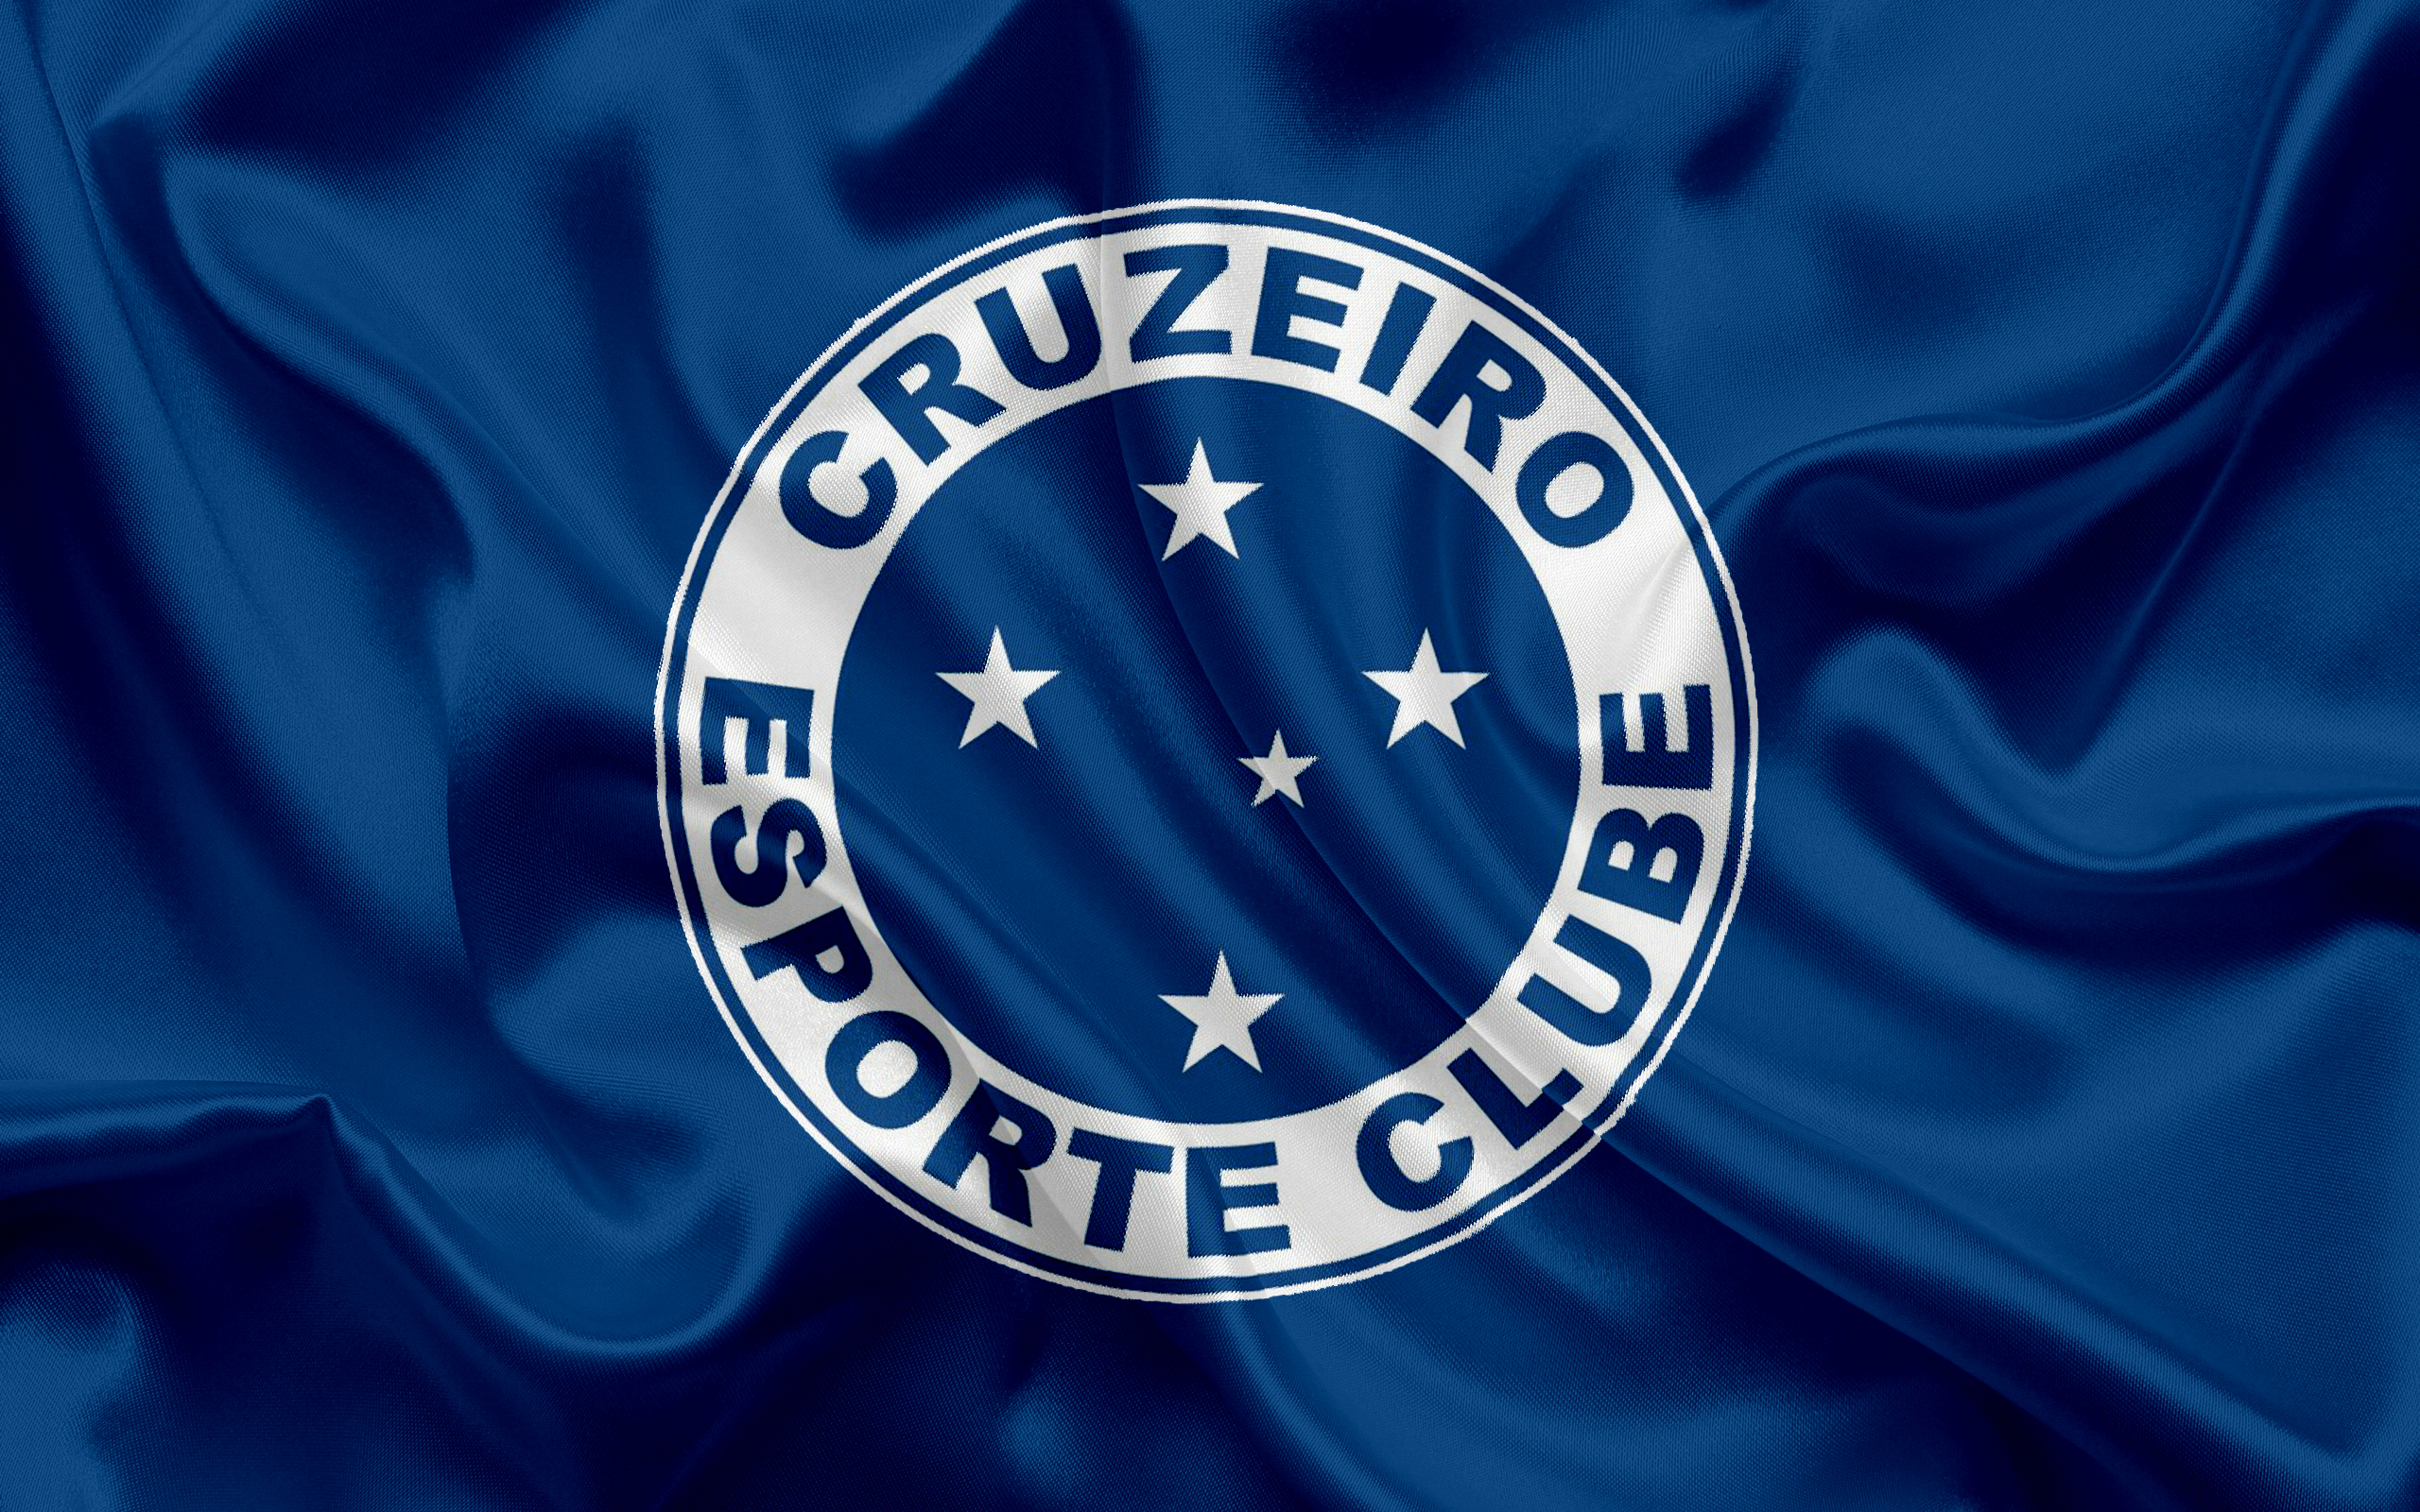 logo, cruzeiro esporte clube, emblem, soccer Cell Phone Image